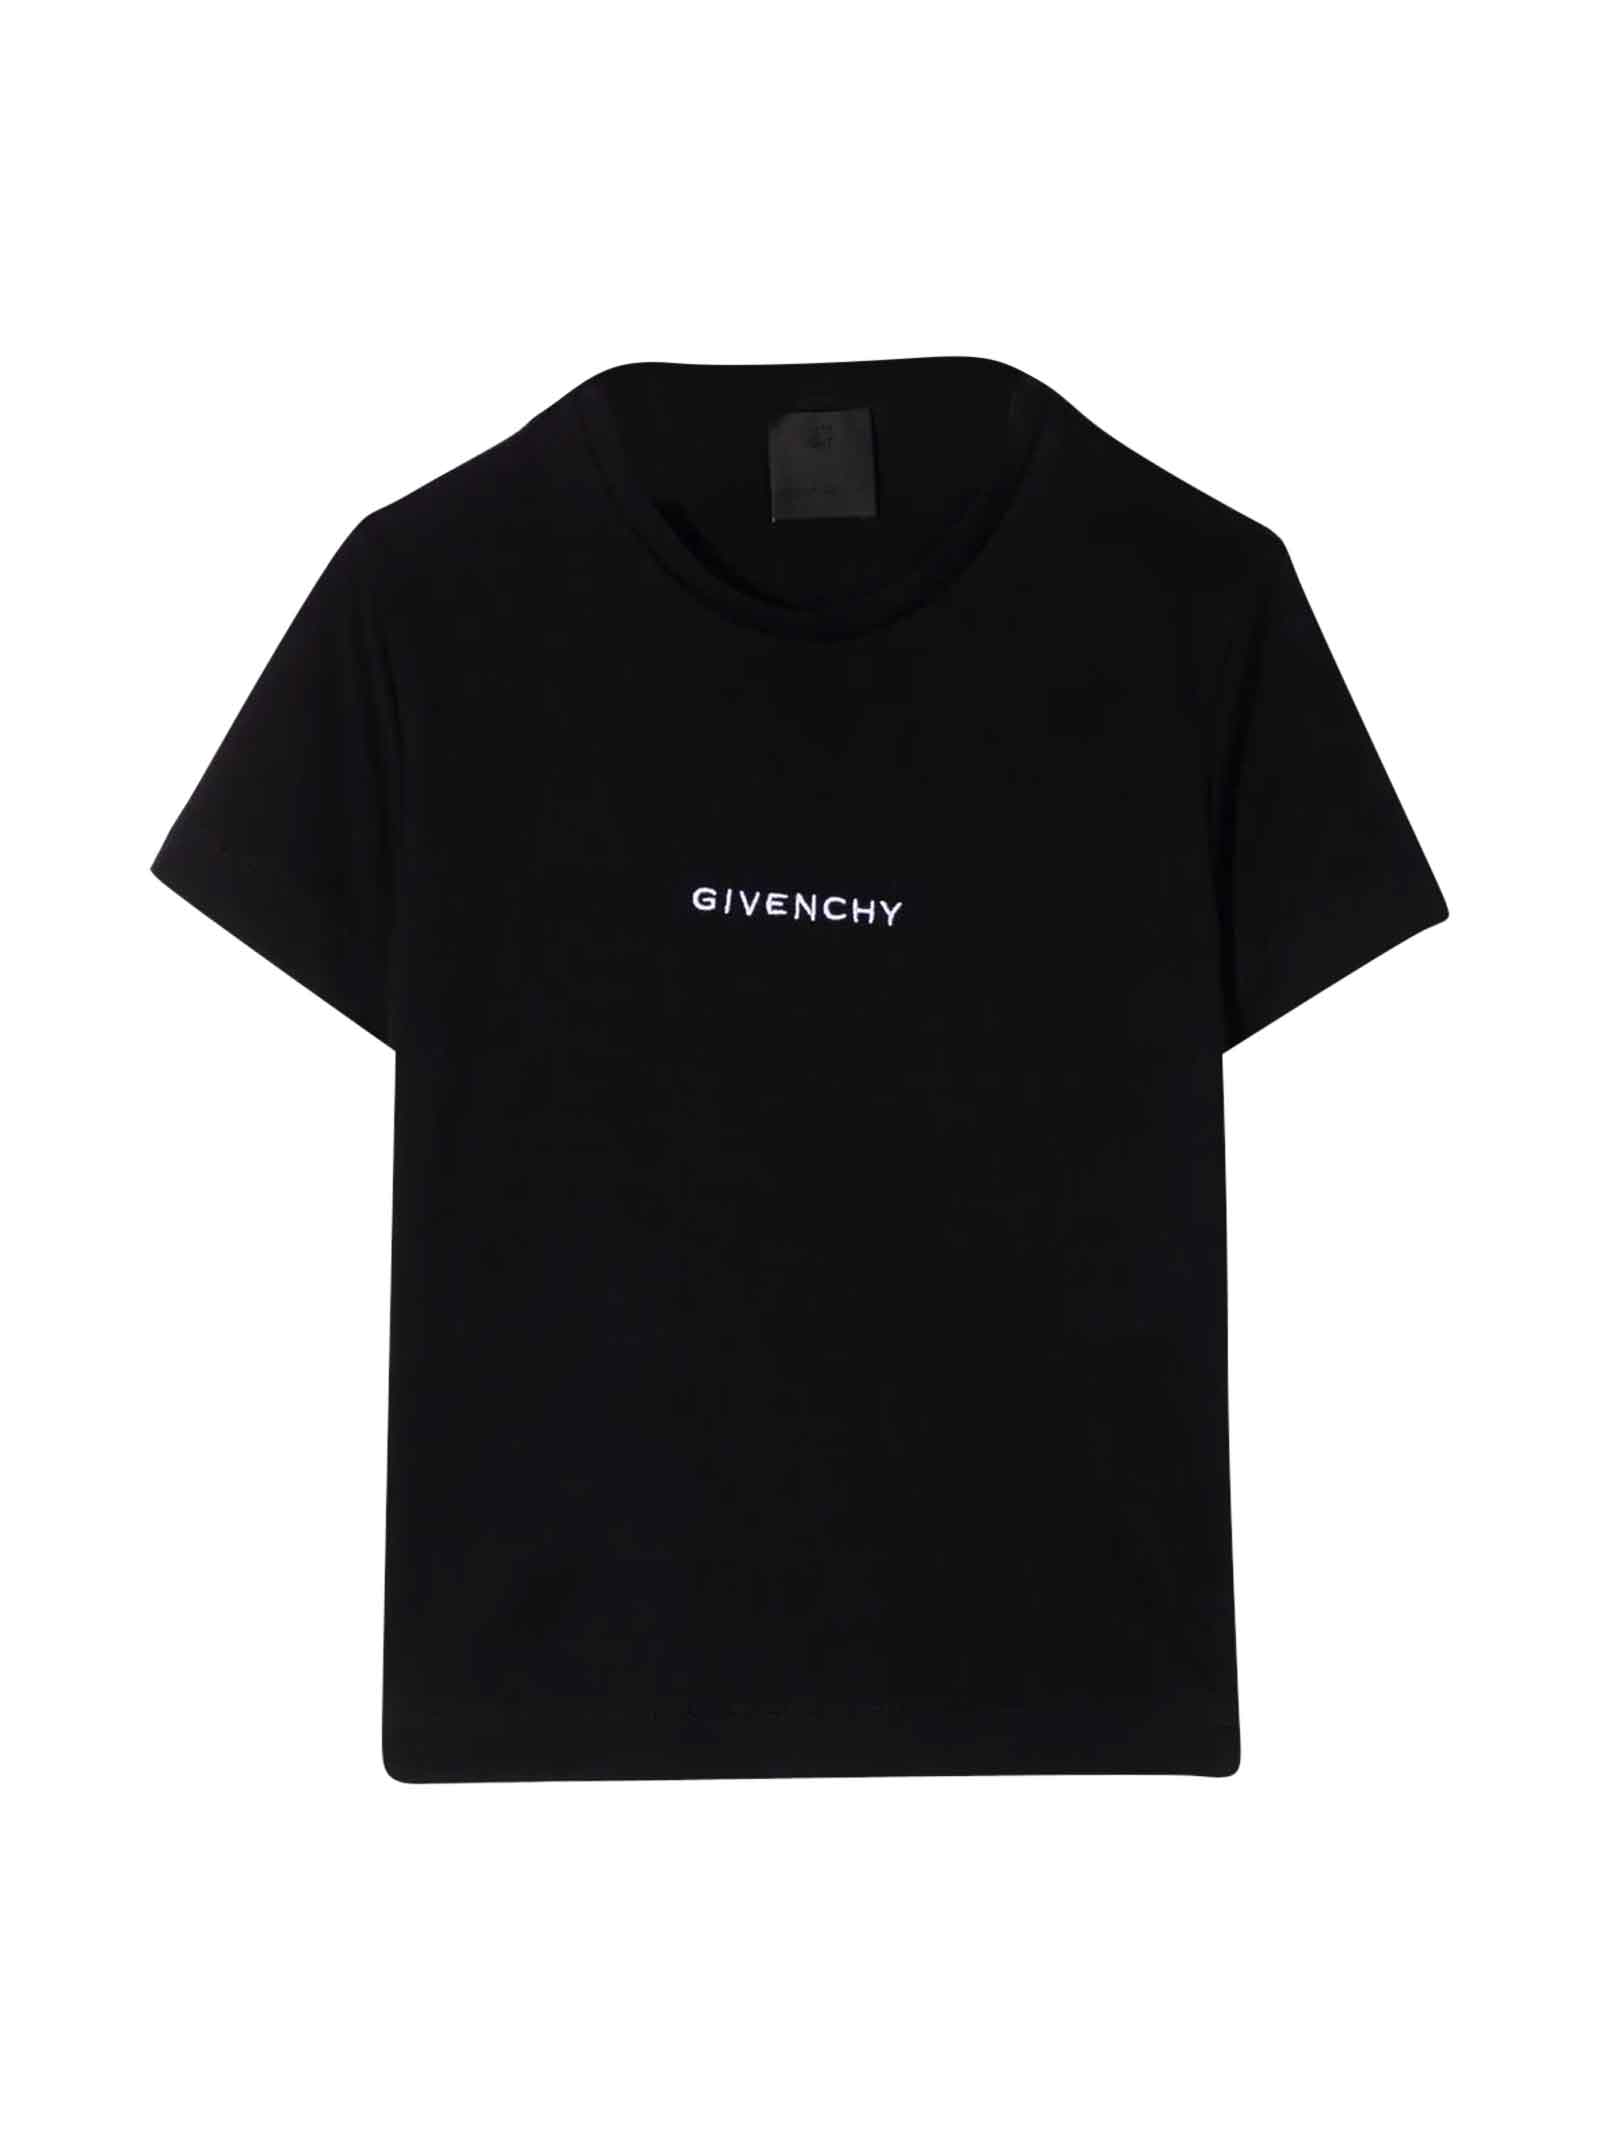 Givenchy Unisex Black T-shirt